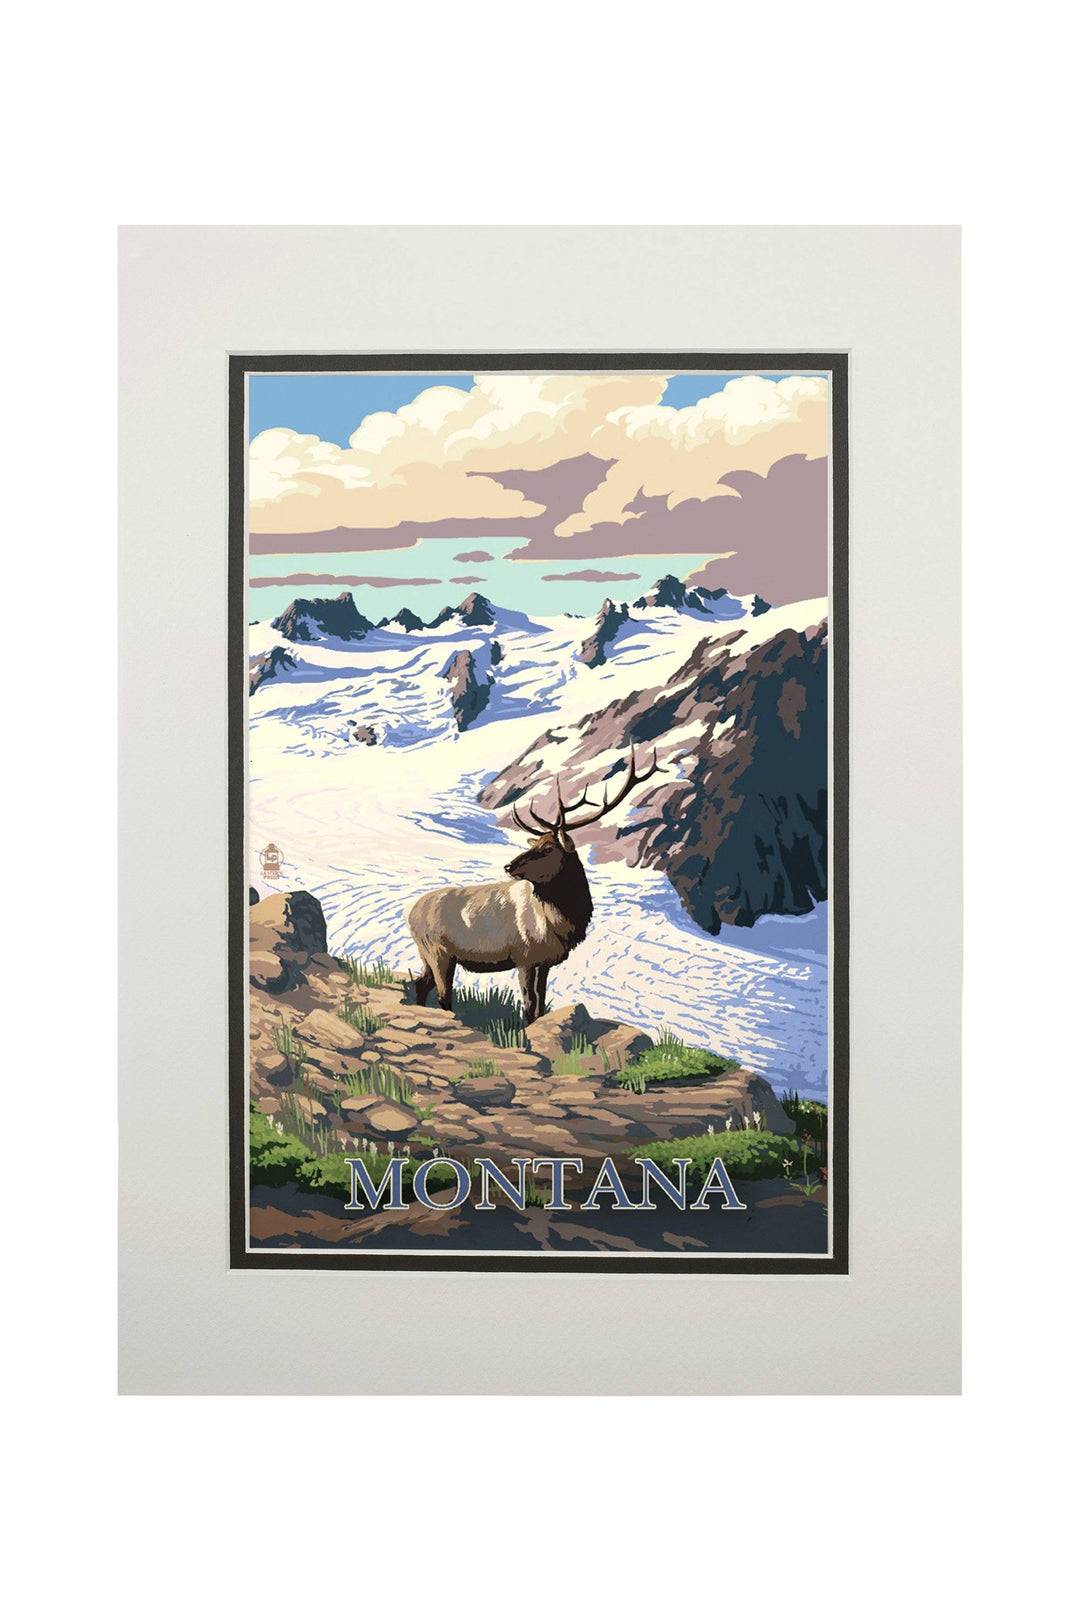 Montana, Elk & Snowy Mountain, Lantern Press Artwork, Art Prints and Metal Signs Art Lantern Press 